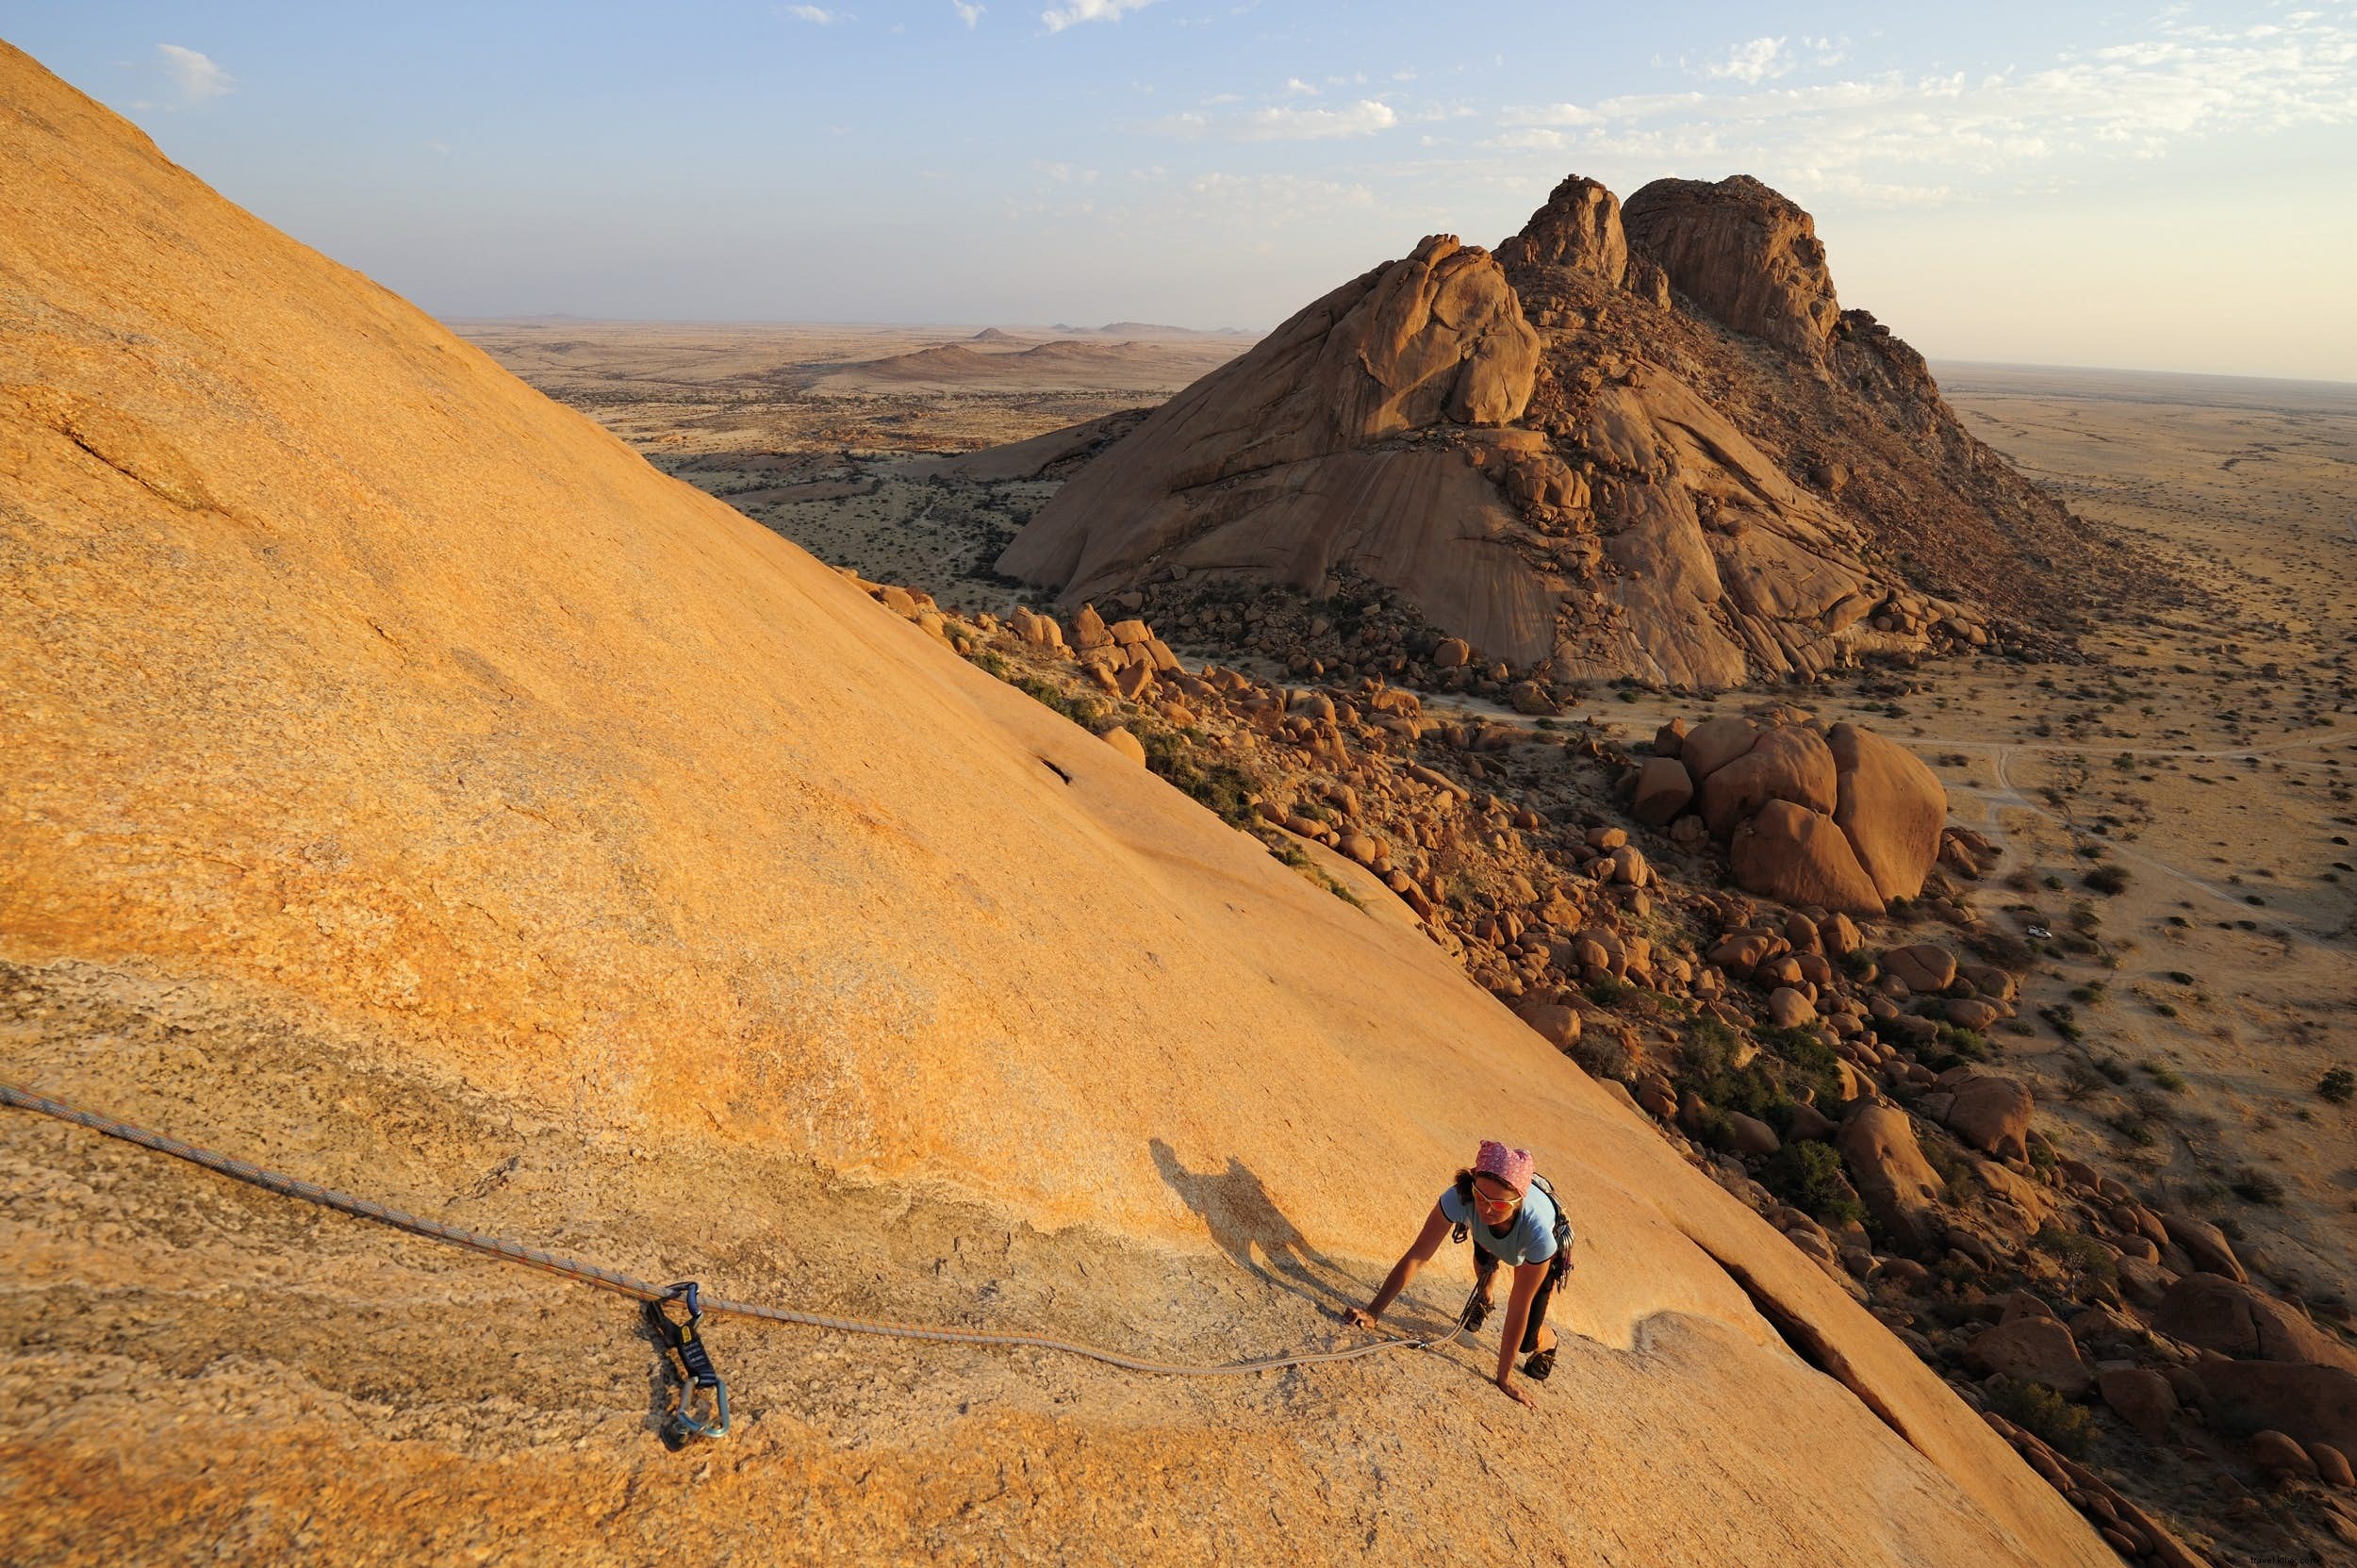 Embarque en las dunas, escalada, surf y más:encontrar aventuras en Namibia 